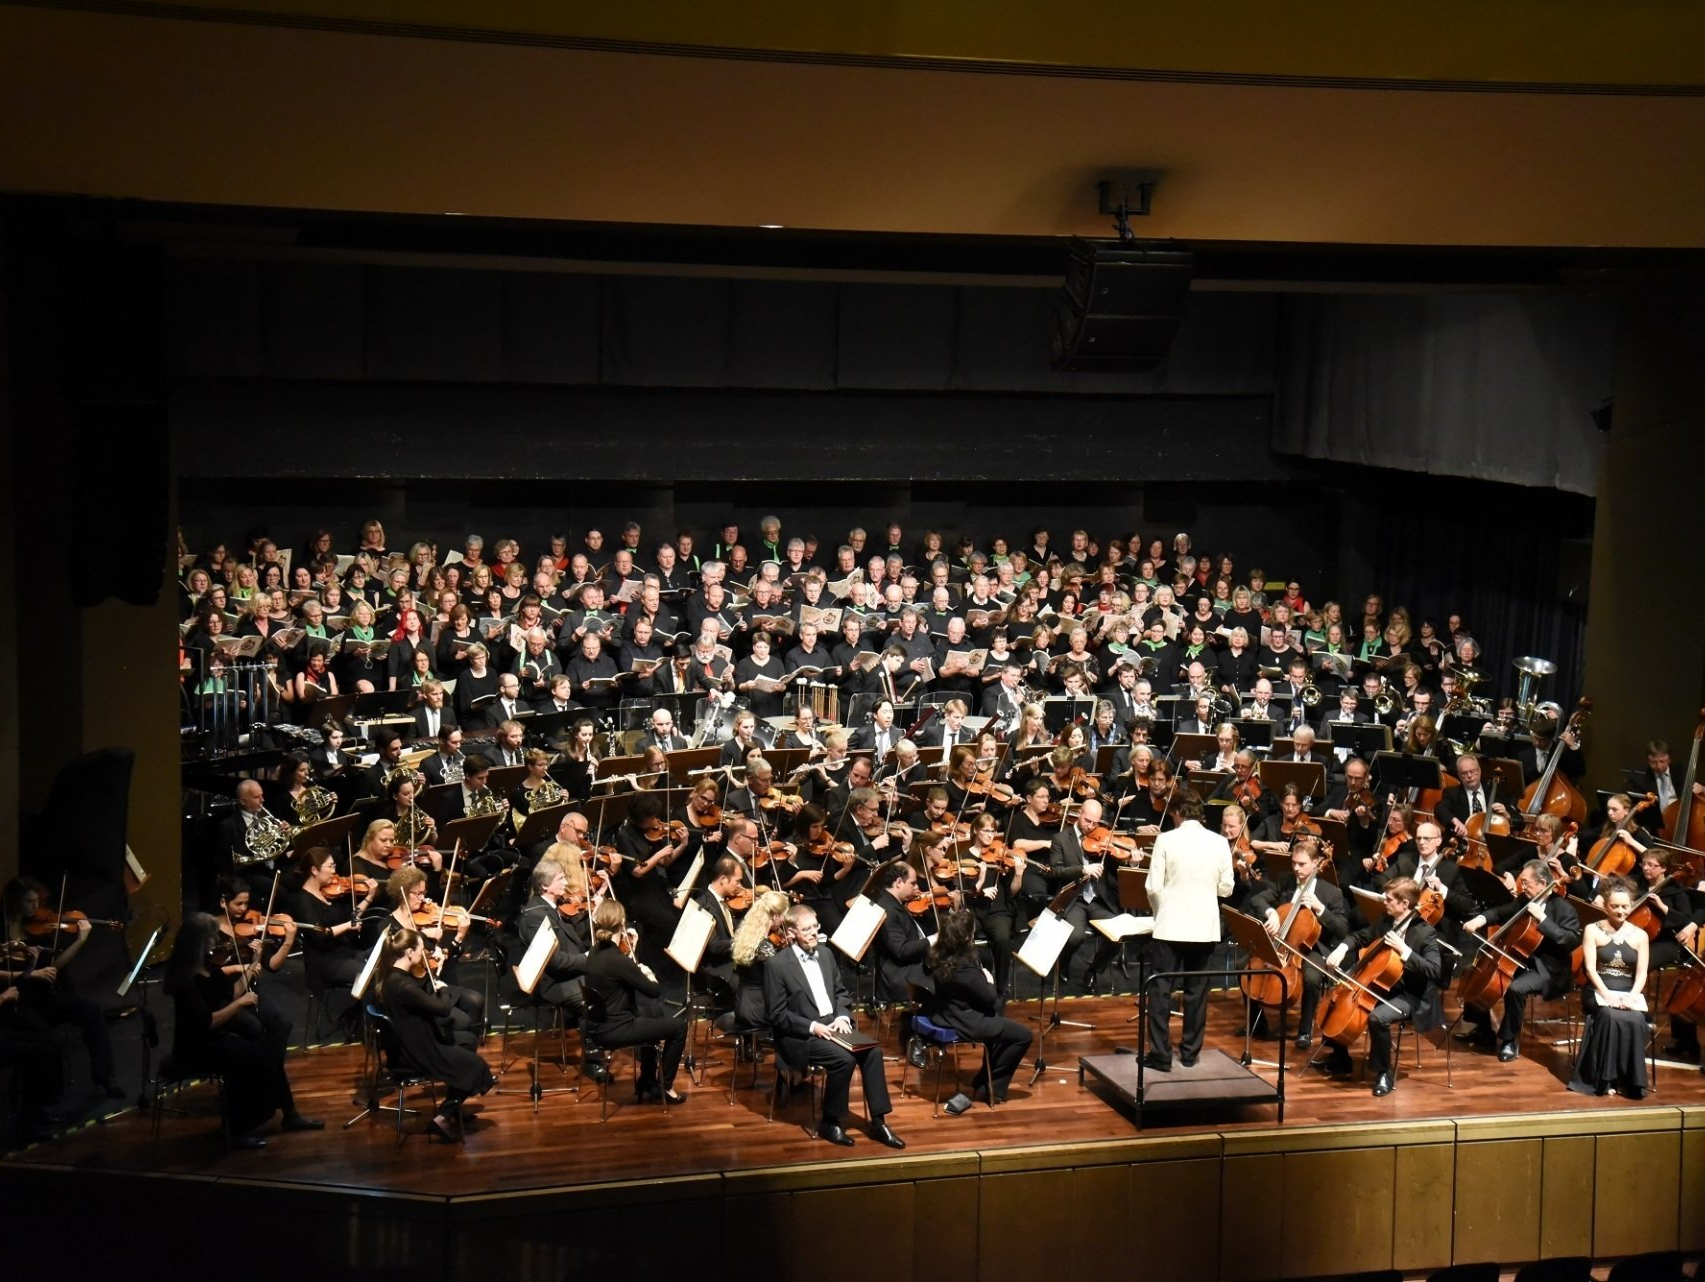 Orchester mit großem Chor auf einer Bühne